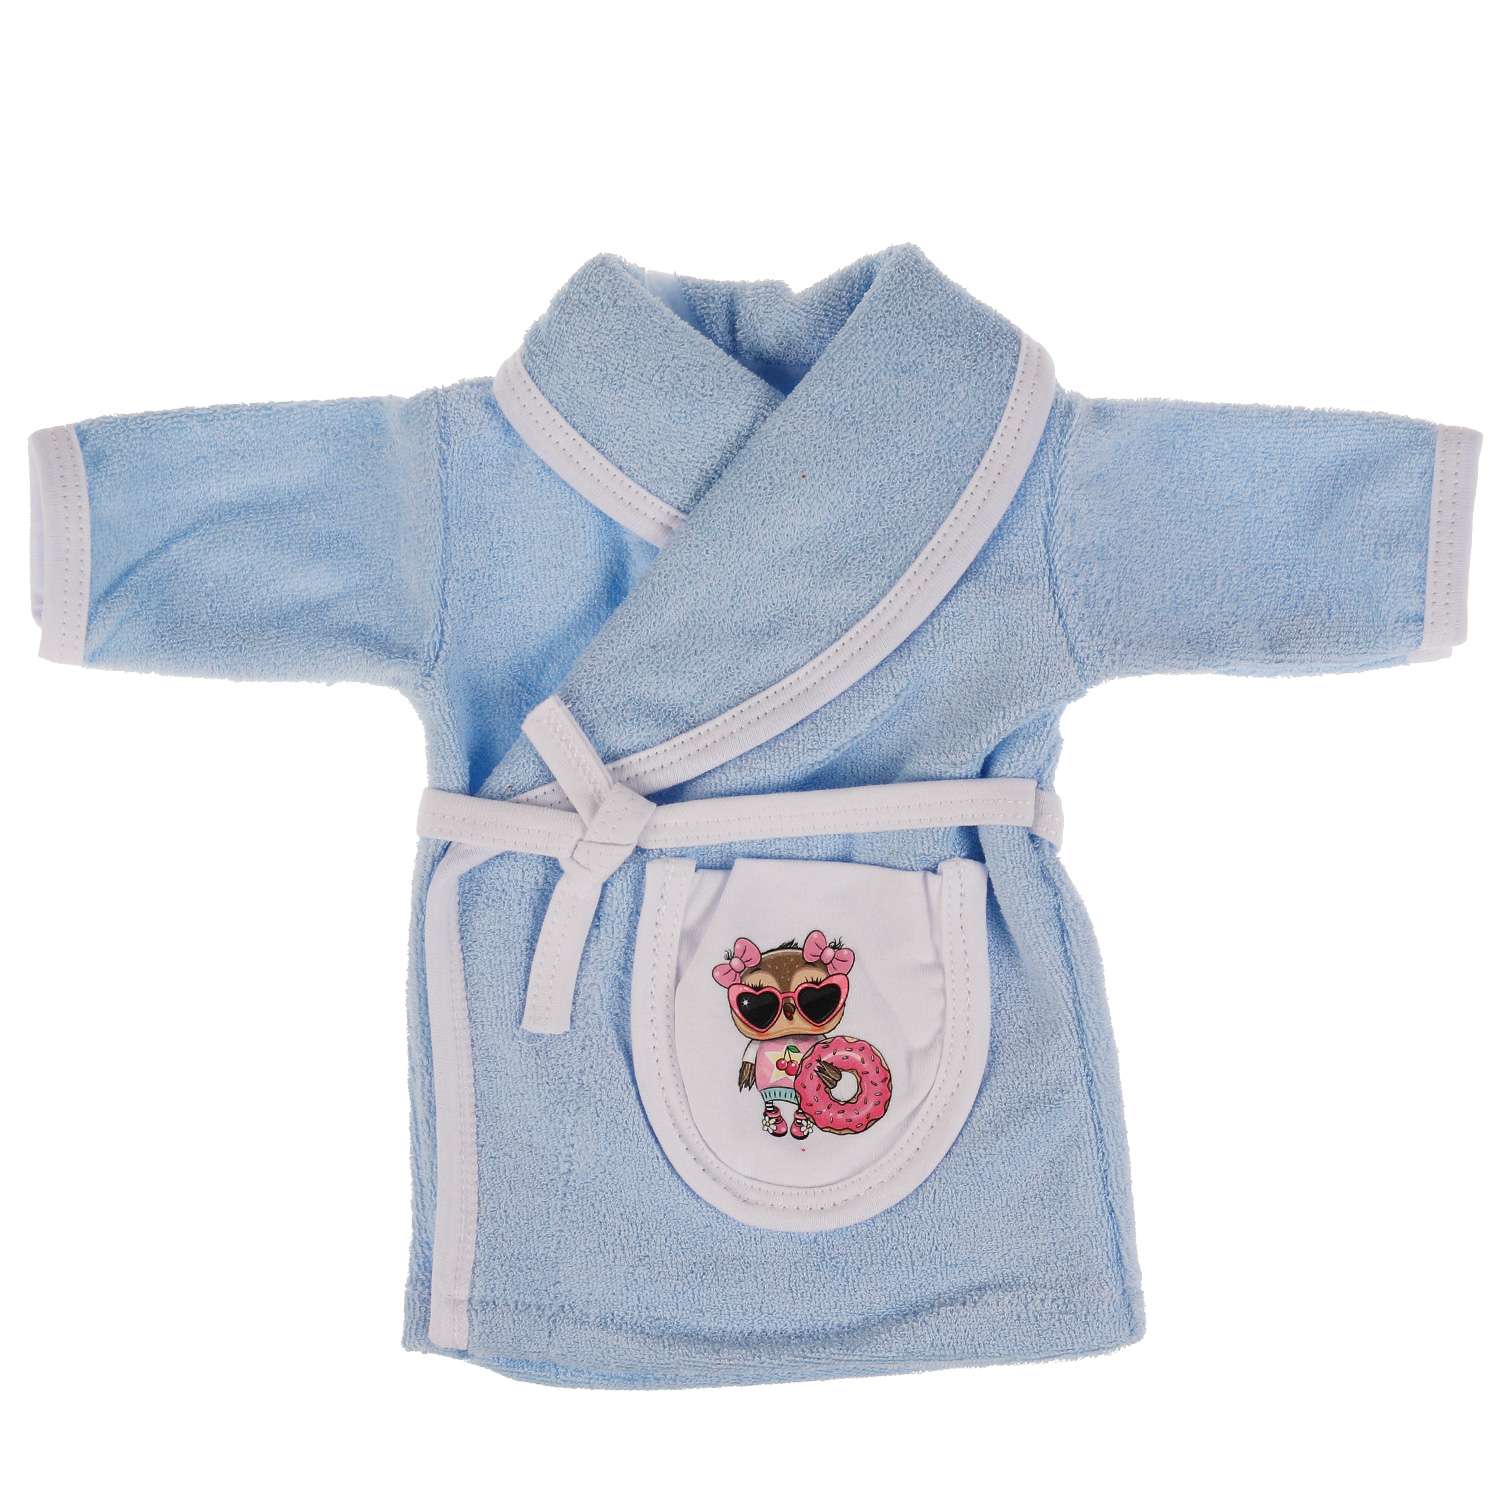 Одежда для кукол Карапуз 40-42 см голубой халат сова 334983 - фото 1